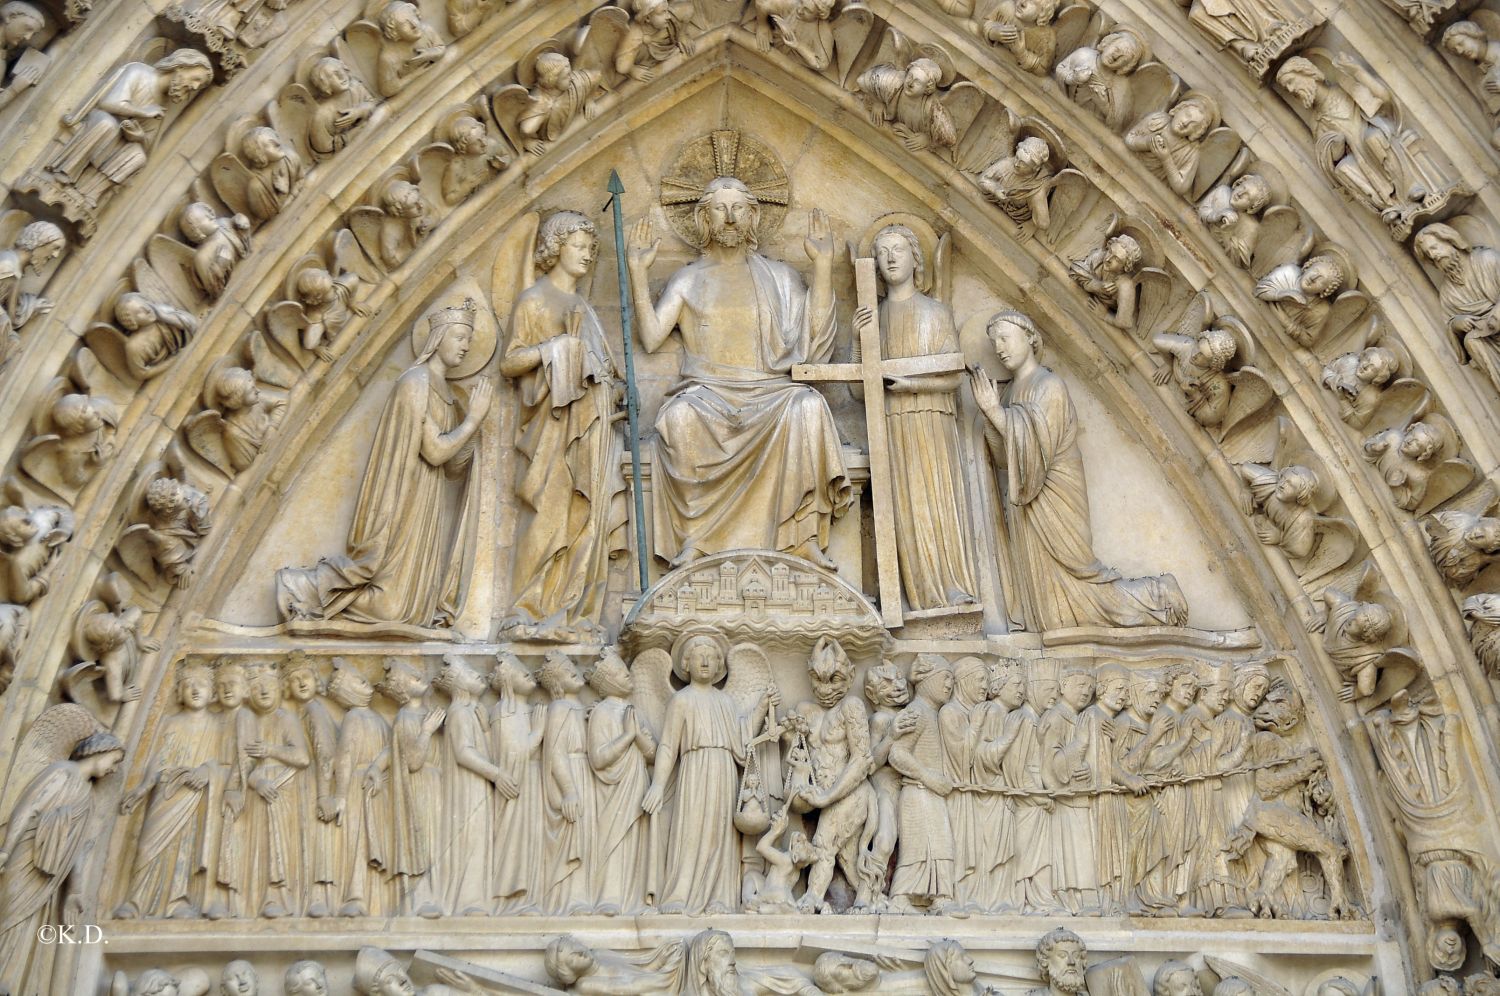 Weltgerichtsportal von Notre Dame in Paris